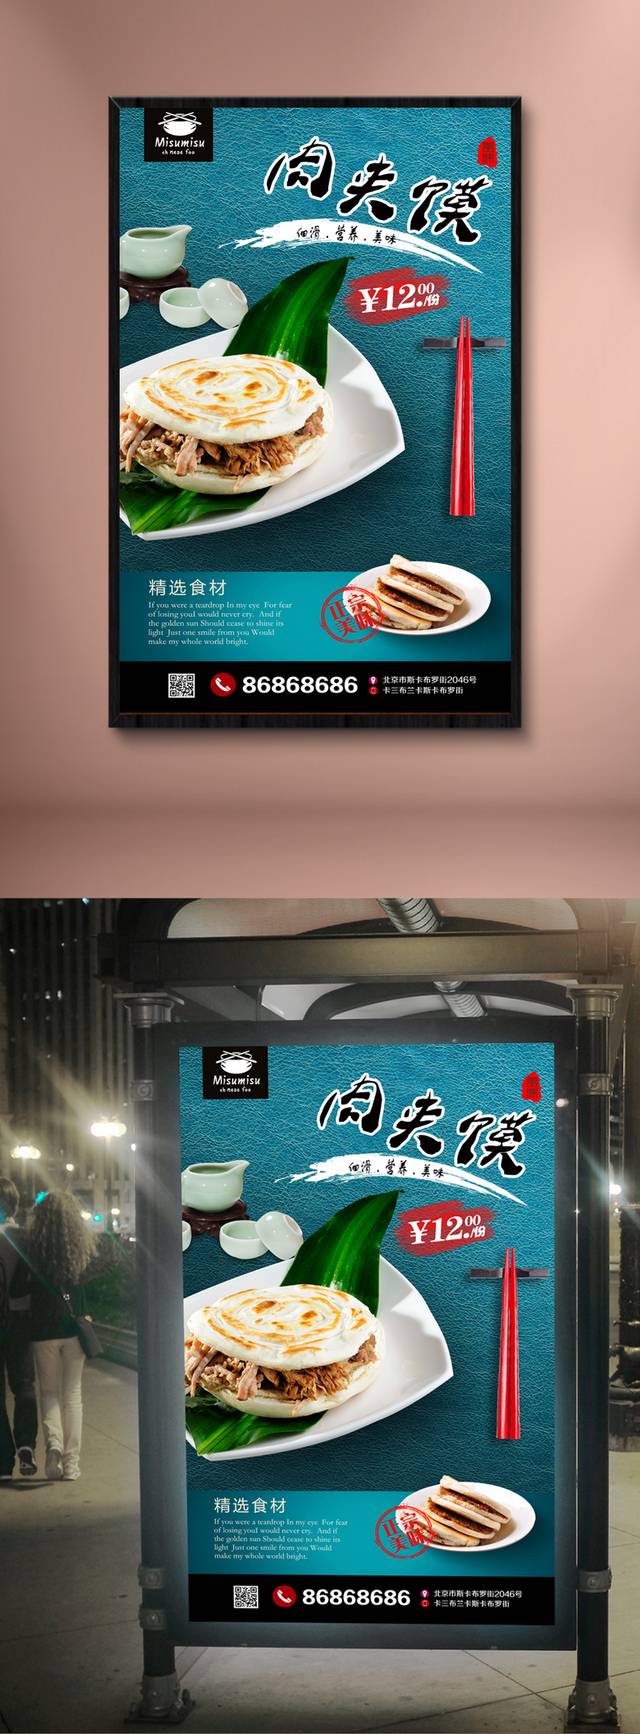 高清传统小吃肉夹馍宣传海报设计